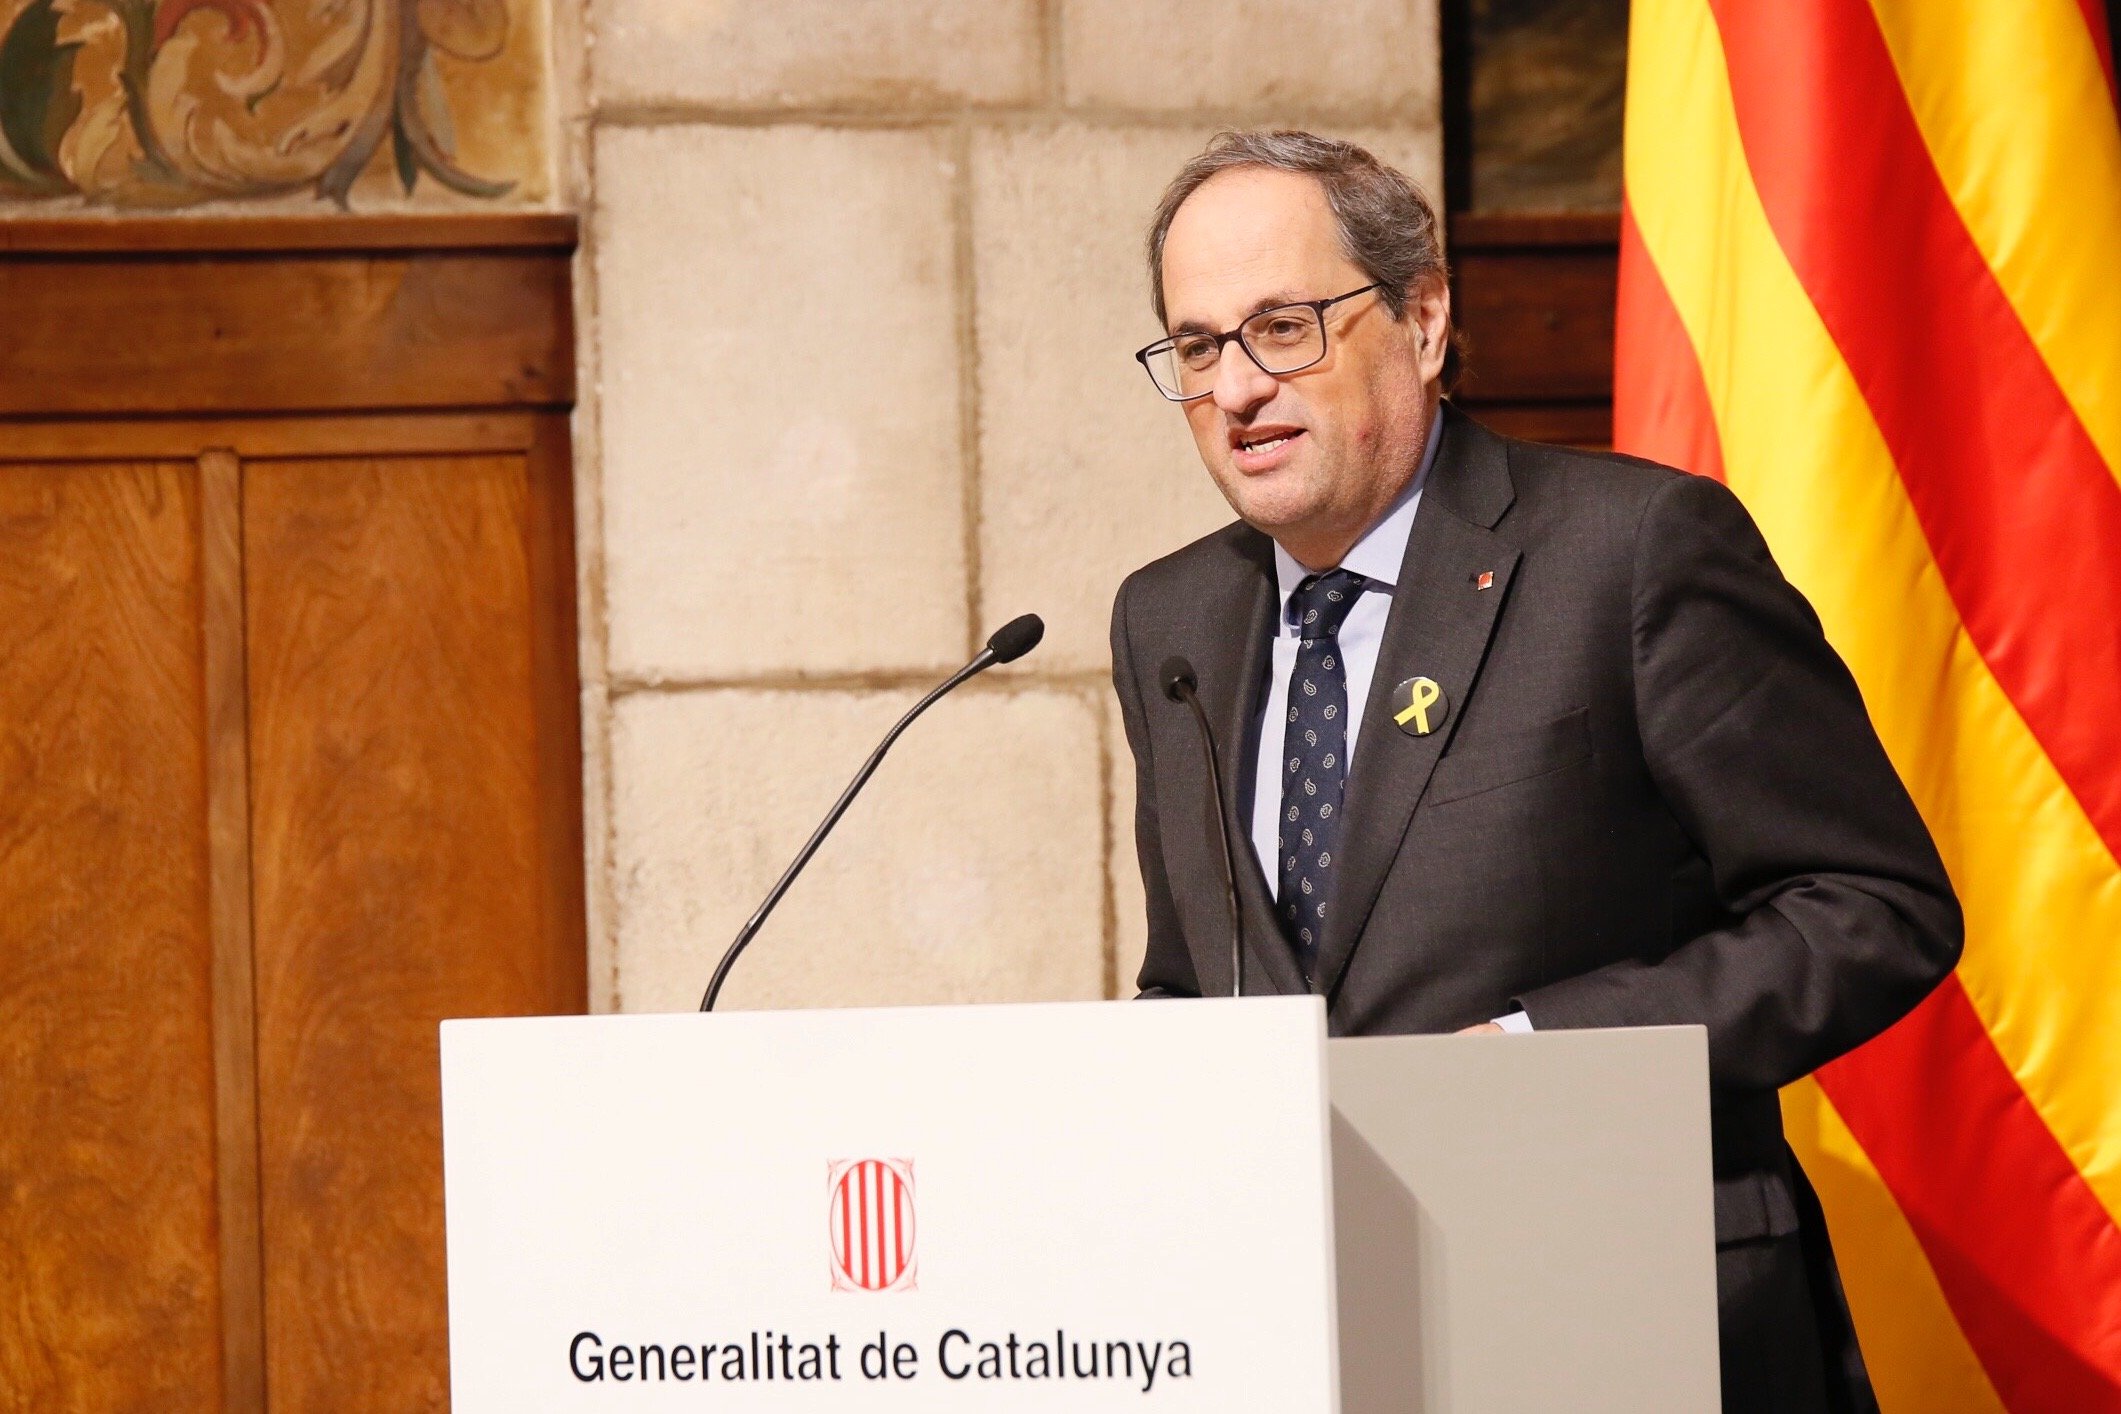 La Generalitat celebra el centenari de les biblioteques catalanes amb un carnet únic